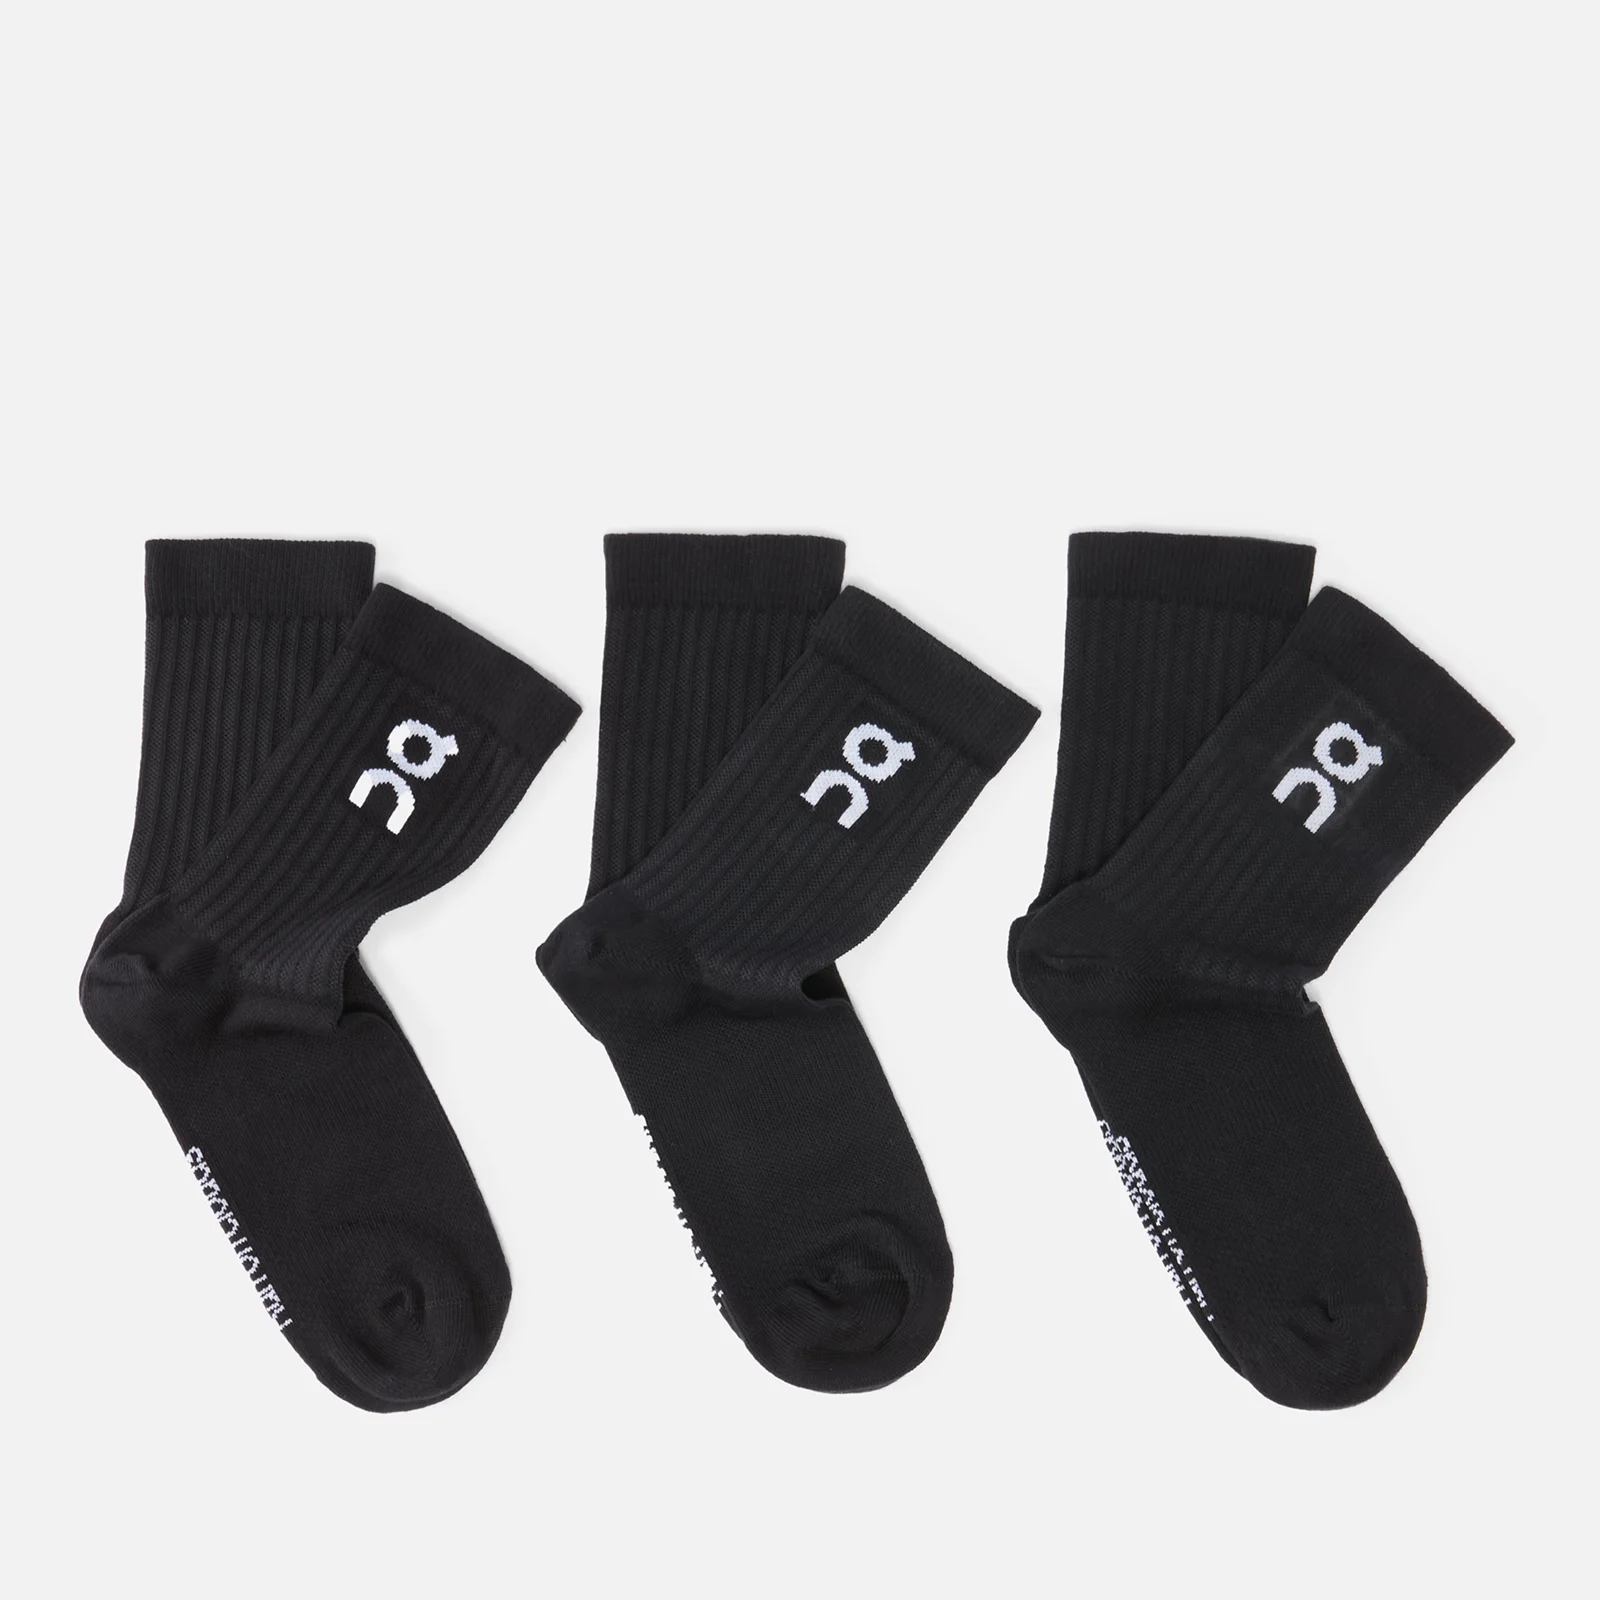 ON Men's 3 Pack Logo Socks - Black Image 1